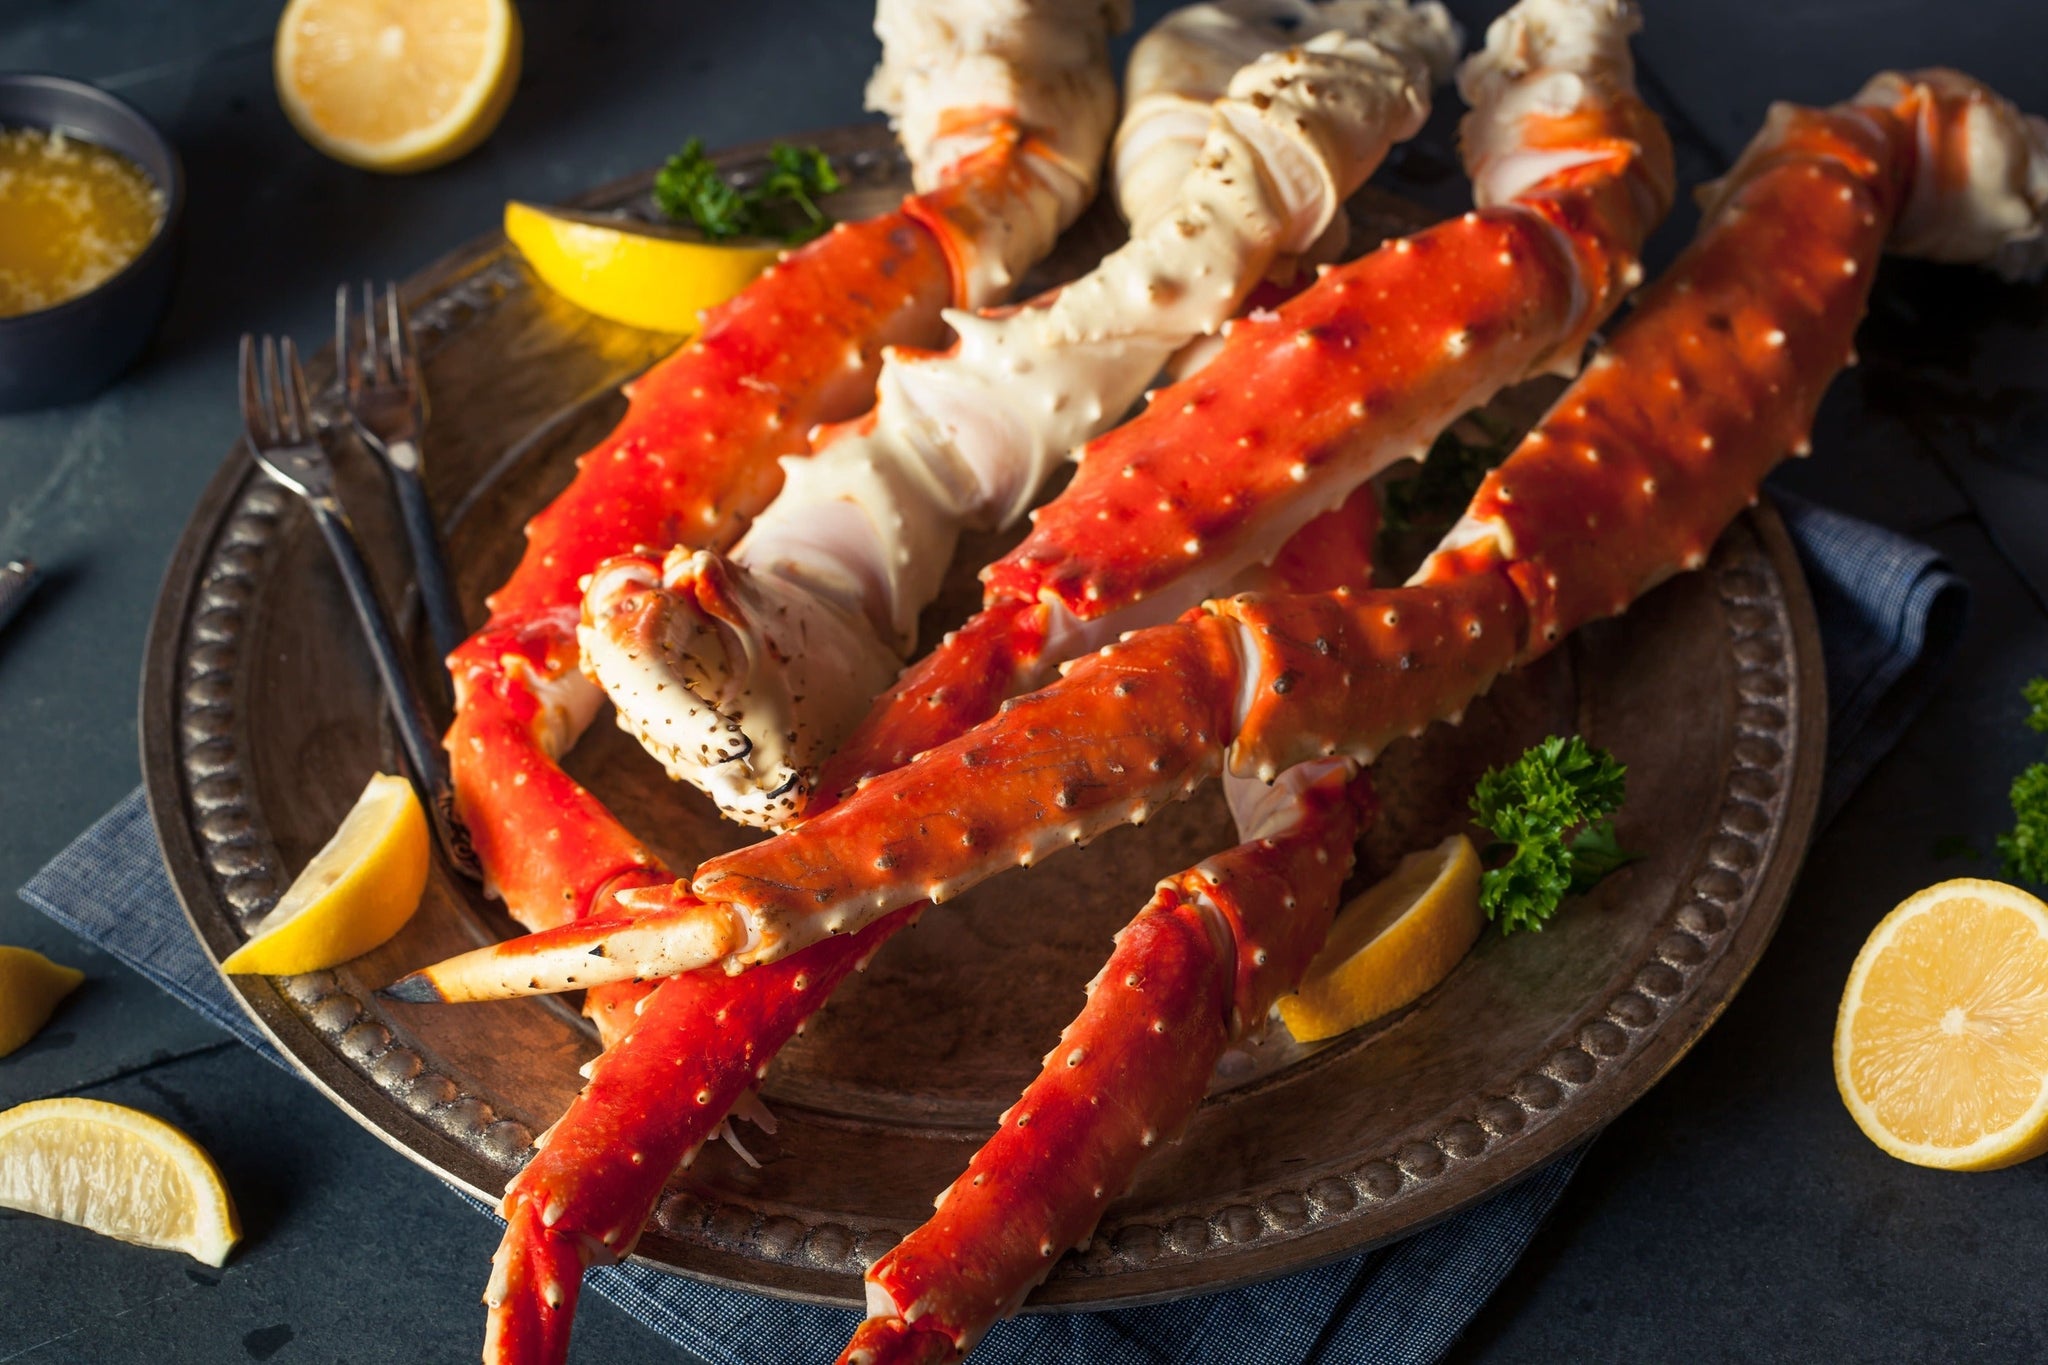 King Crab Legs in Brine - 60% - Gourmet Food Store